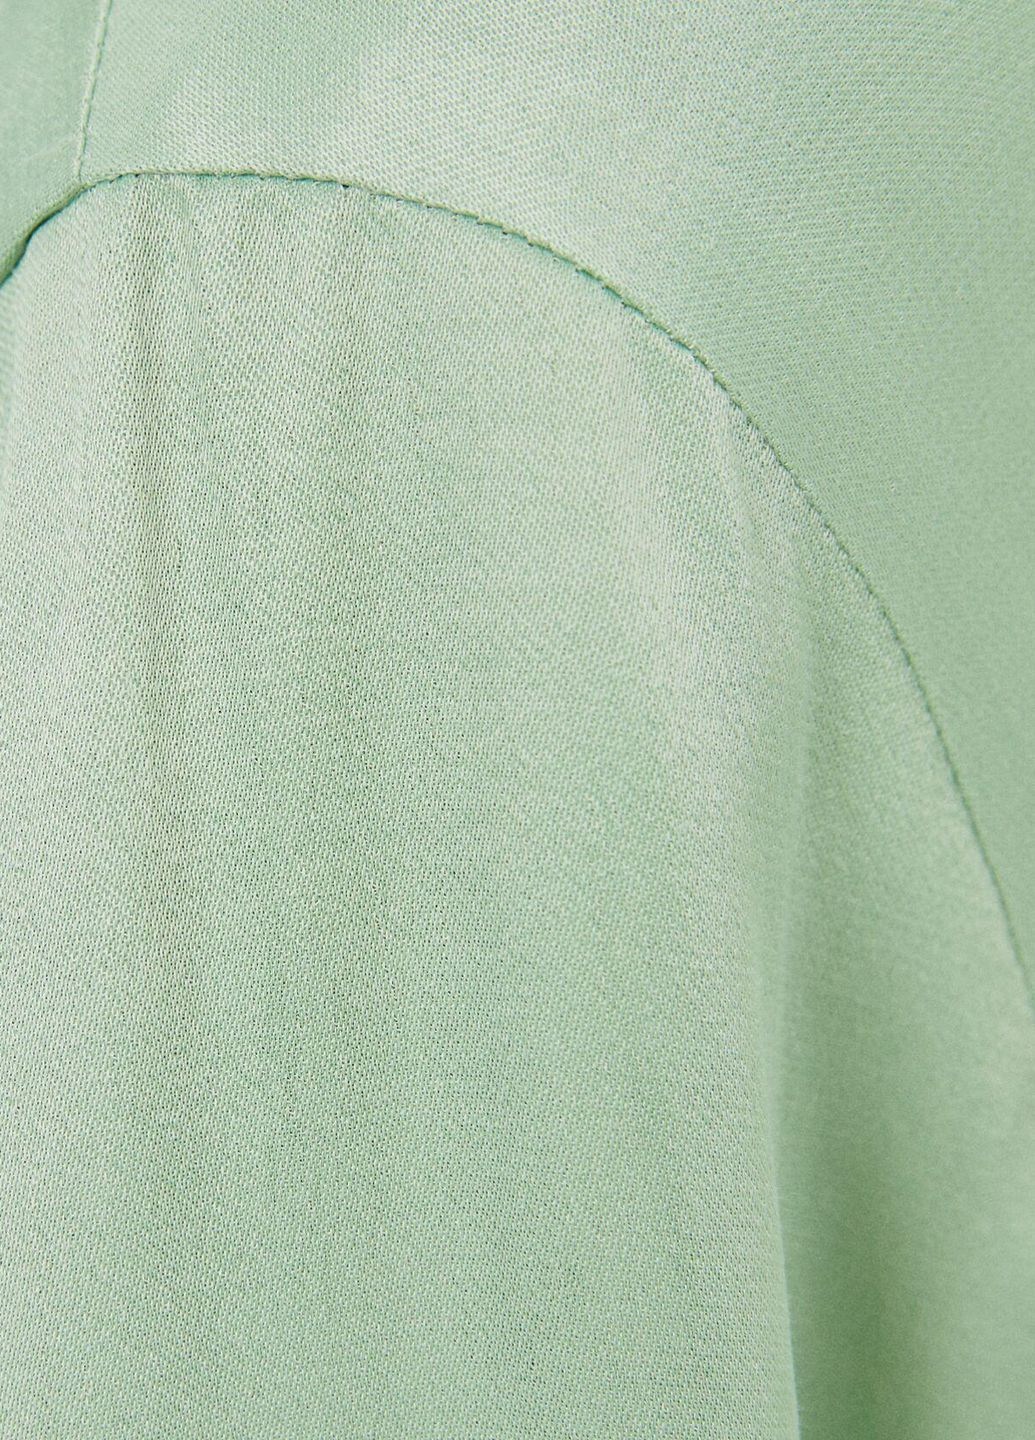 Светло-зеленая блуза демисезон,бледно-зеленый, Bershka